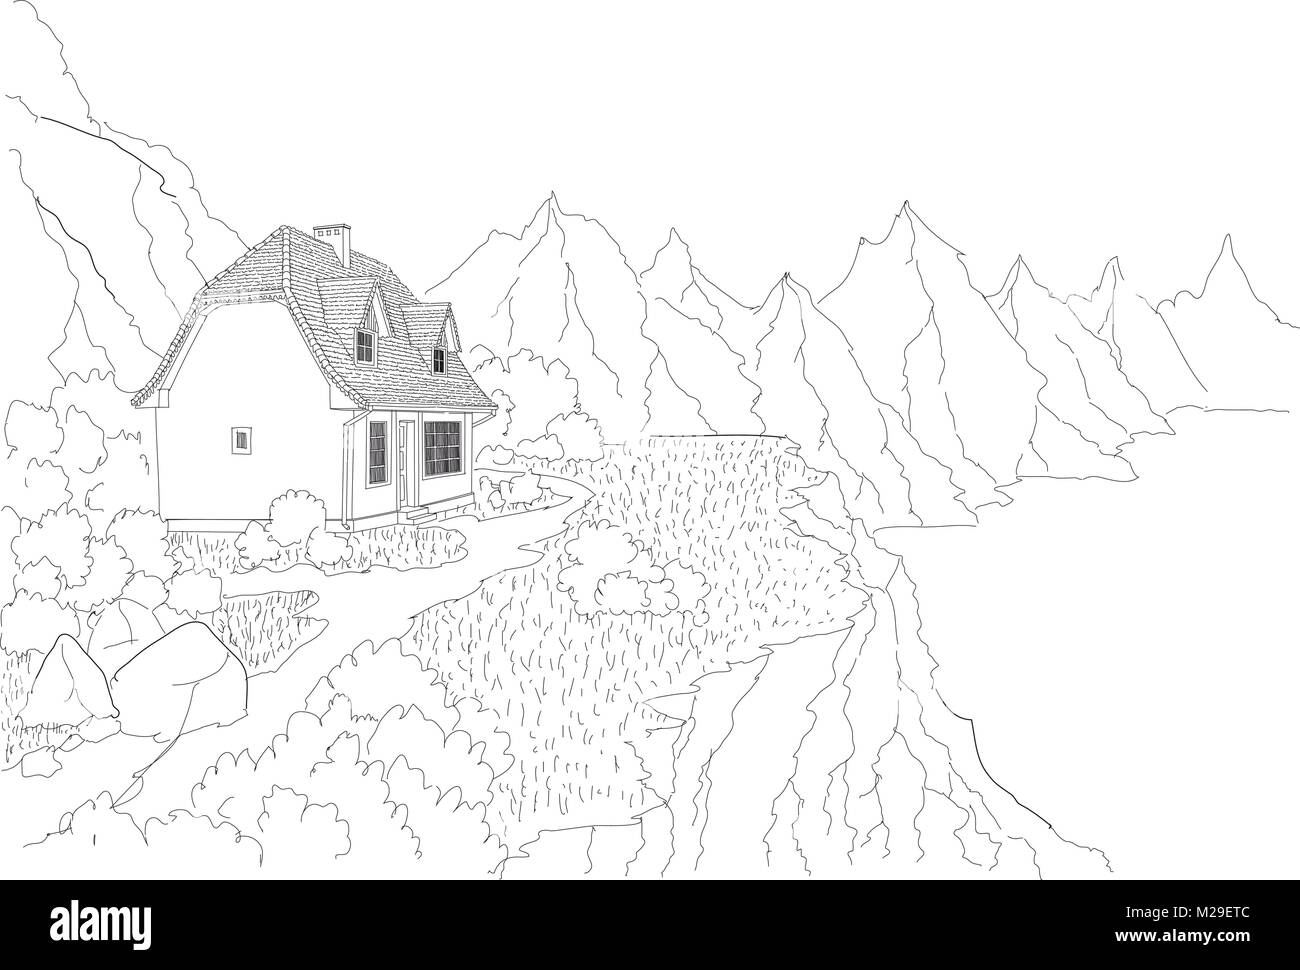 Ein Landhaus am Ufer eines Bergsees. Bergluft und klares Wasser. Erholung und Entspannung für die städtischen Bewohner. Stock Vektor